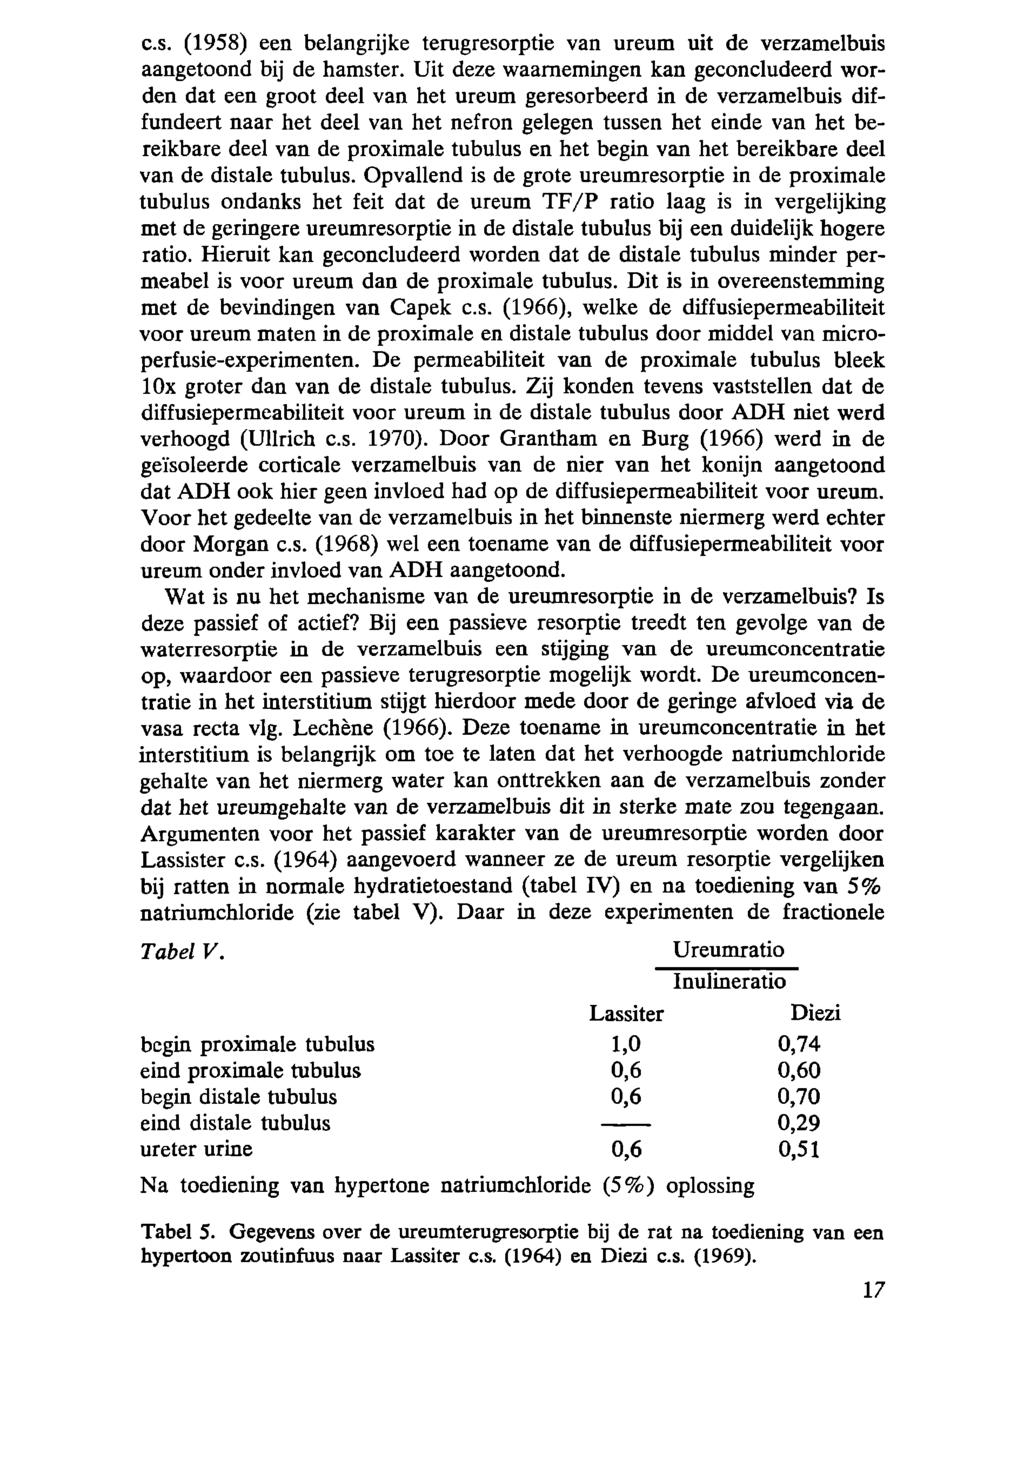 es. (1958) een belangrijke teragresorptie van ureum uit de verzamelbuis aangetoond bij de hamster.